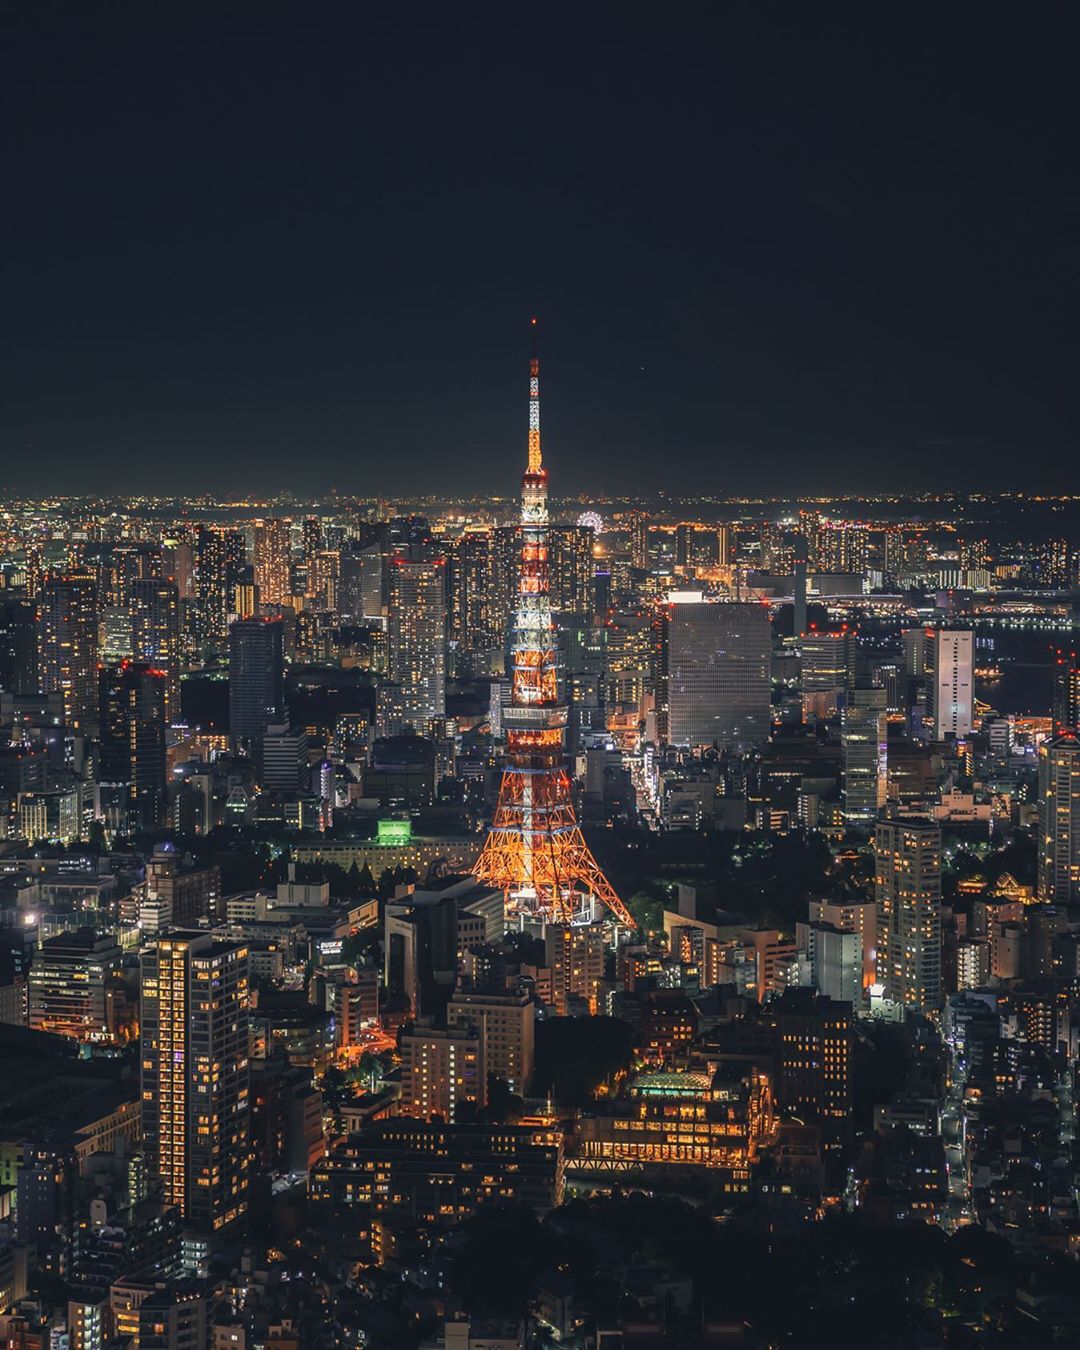 Городские пейзажи и уличные снимки Японии от Хиро Гото